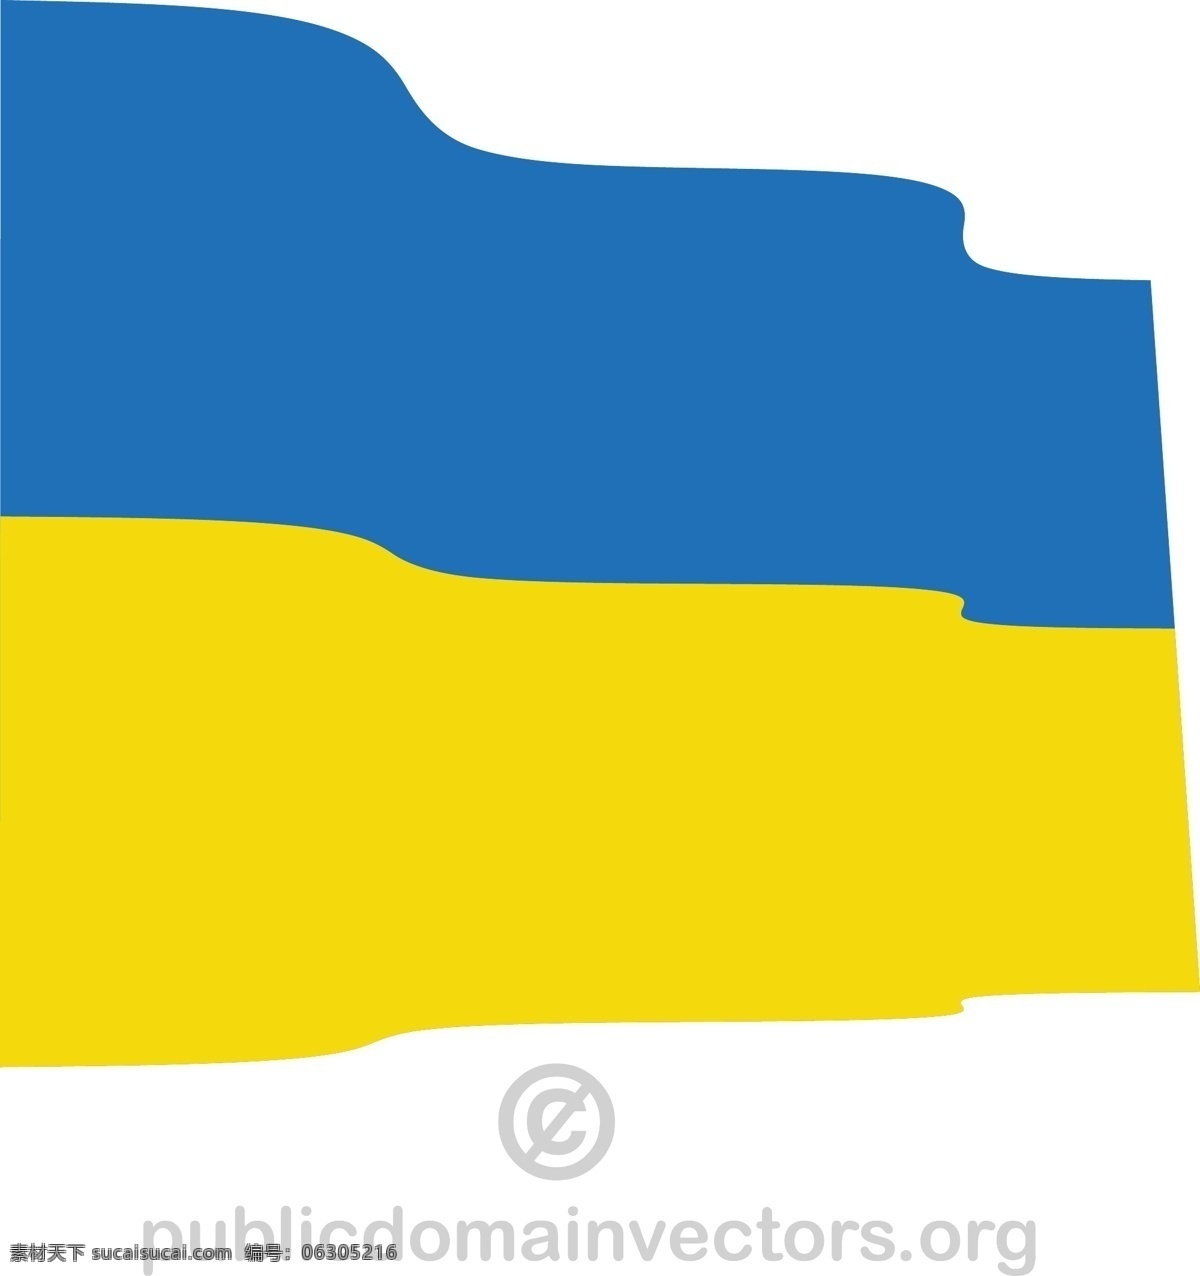 乌克兰 矢量 标志 国家 欧洲 旗帜 土地 共和国 国 欧洲东部 矢量图 文化艺术